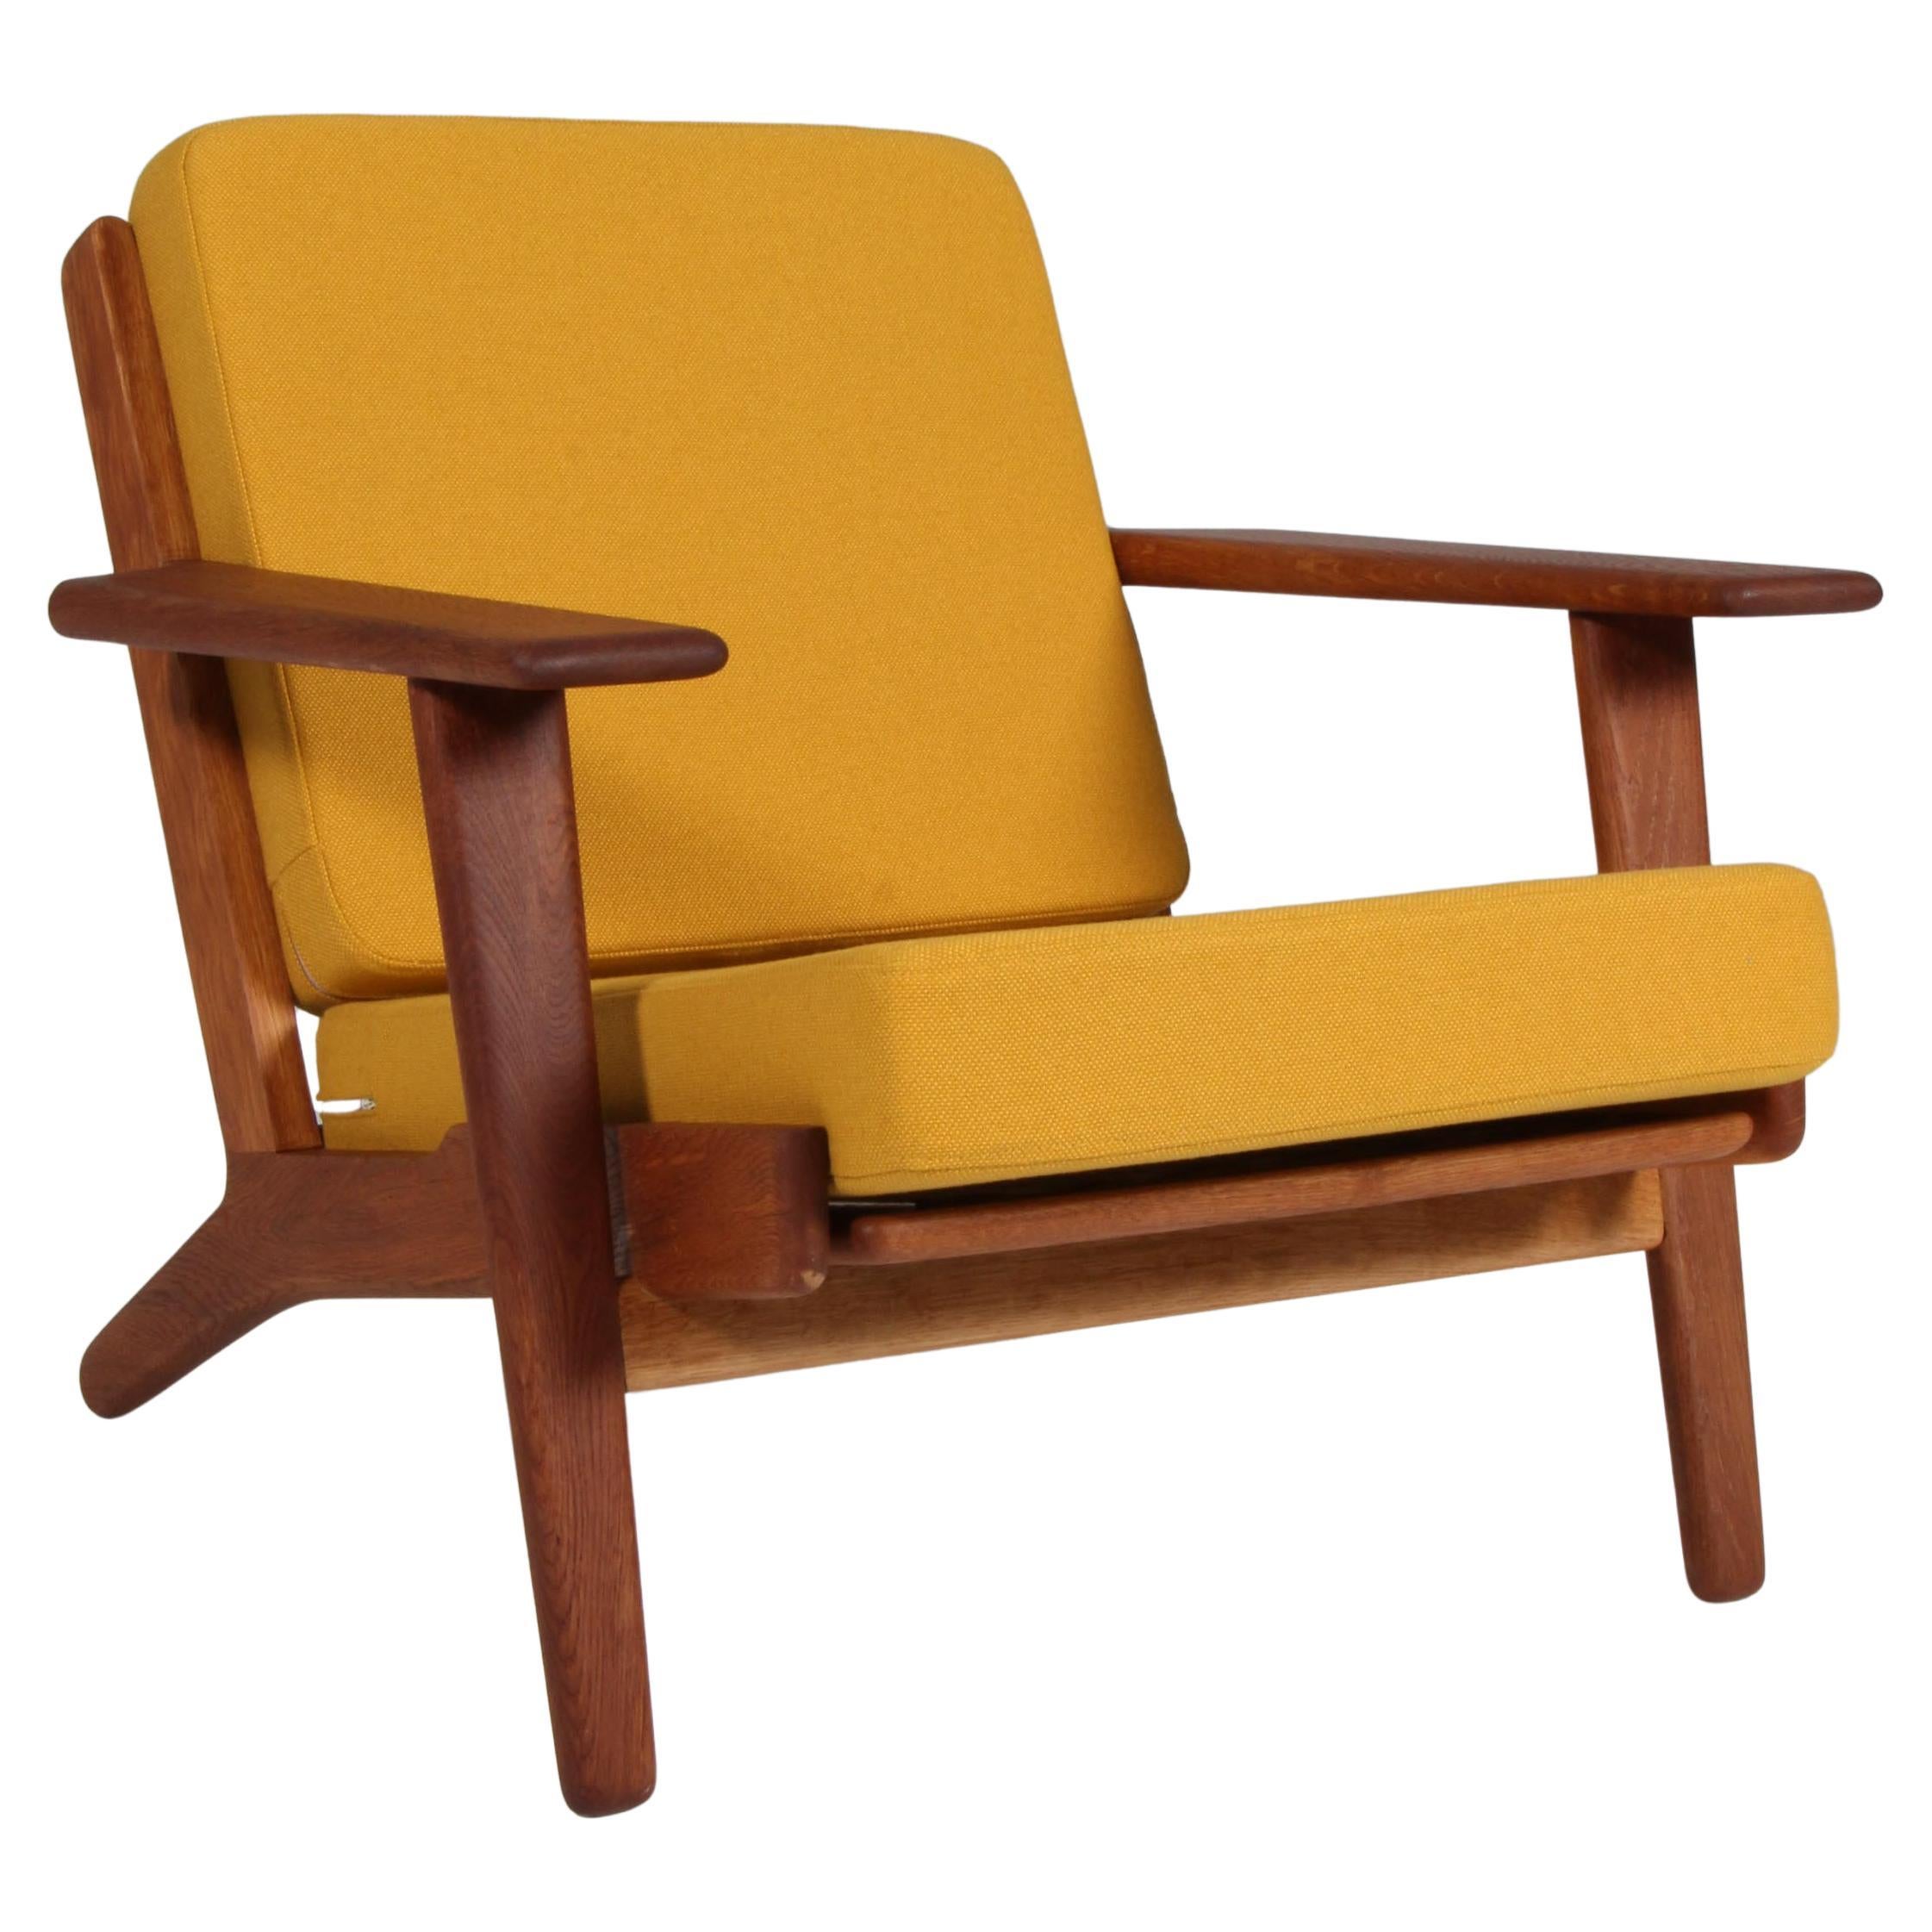 Hans J. Wegner, Lounge Chair, Model 290, oil treated Oak, 1970s Denmark